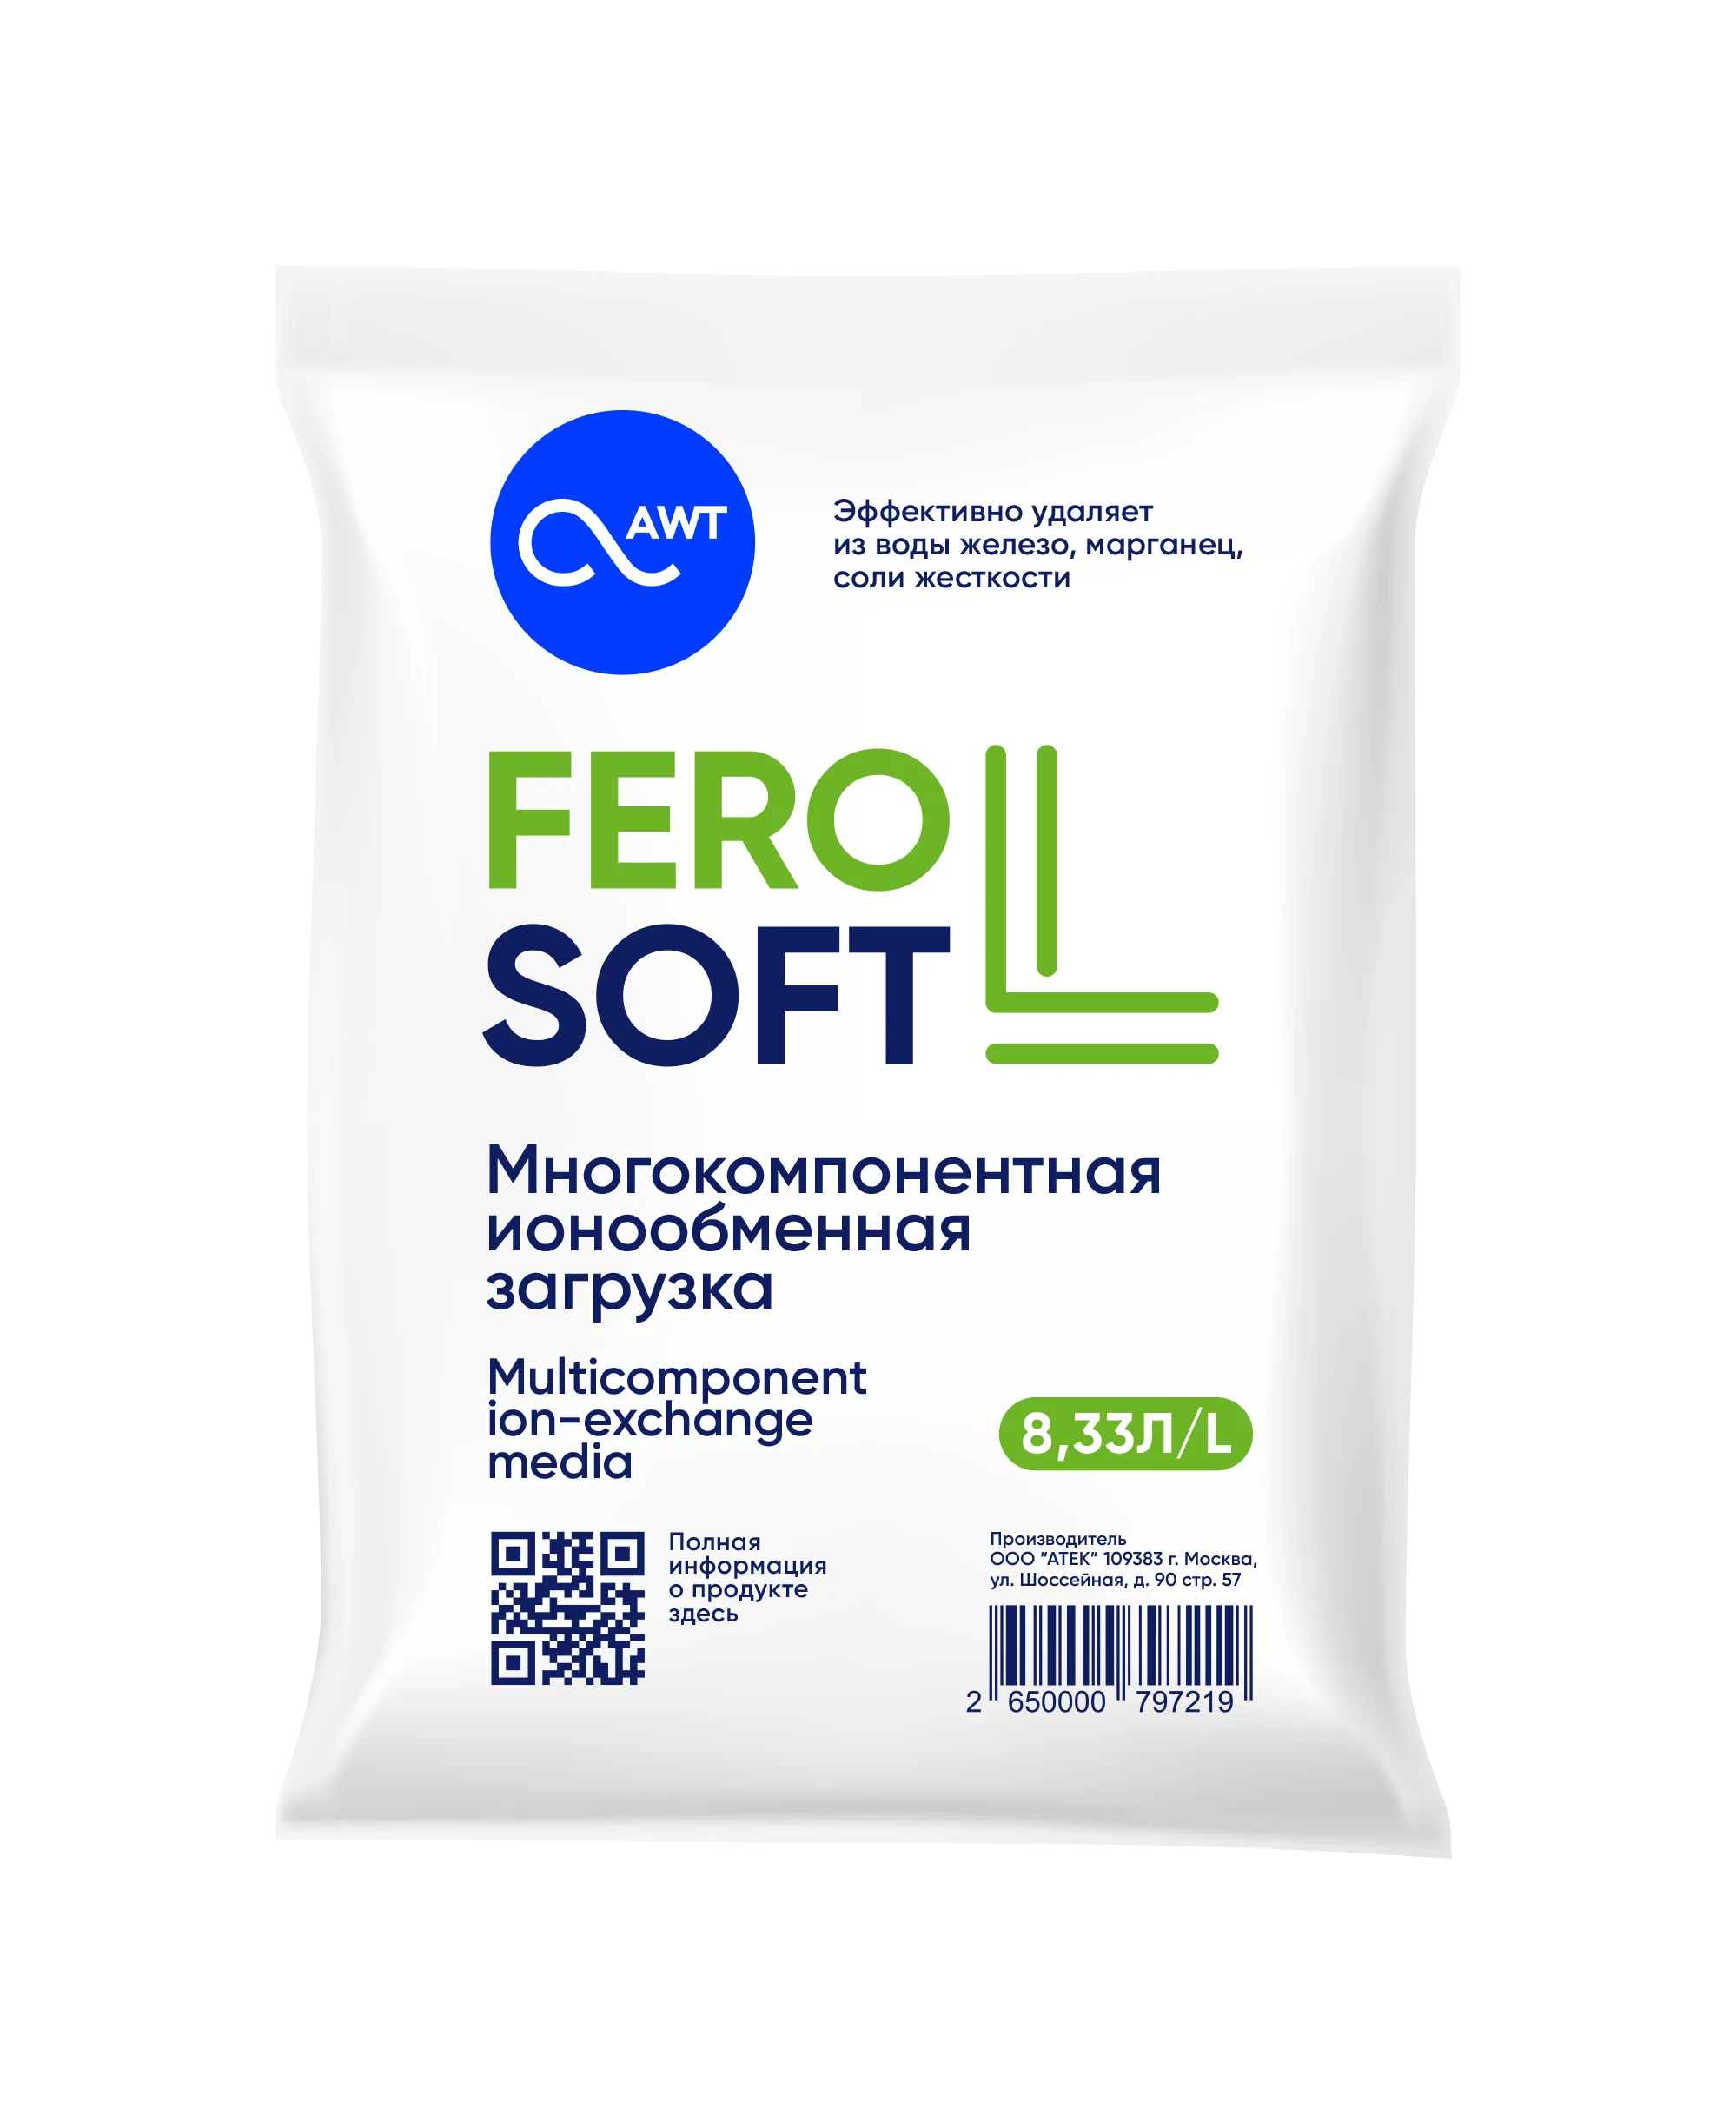 FeroSoft L (ФероСофт Л)